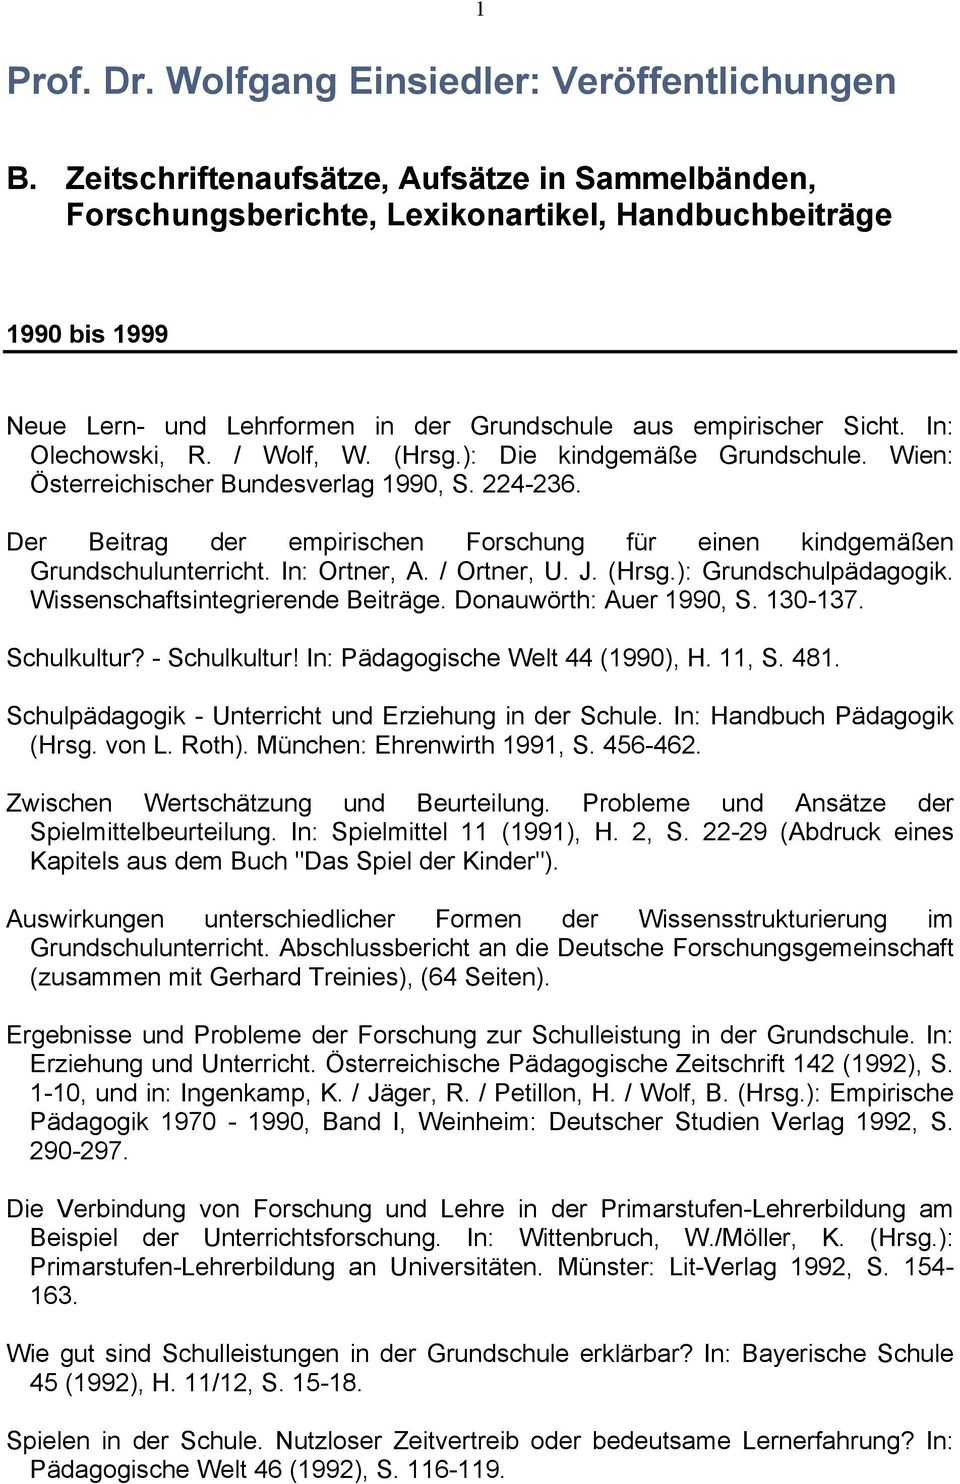 In: Olechowski, R. / Wolf, W. (Hrsg.): Die kindgemäße Grundschule. Wien: Österreichischer Bundesverlag 1990, S. 224-236.